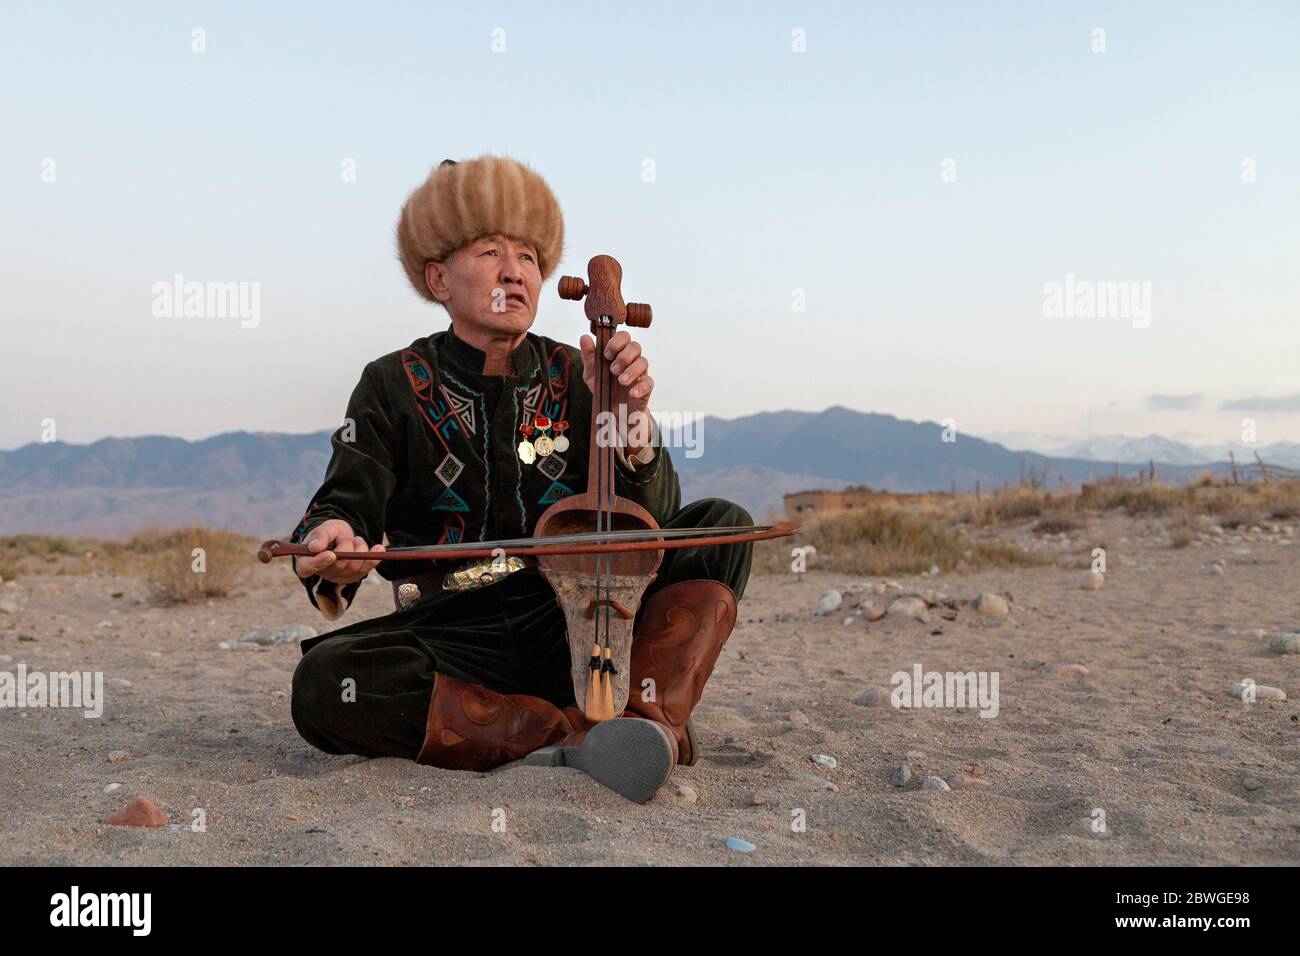 Musicien kirghize jouant un instrument de musique traditionnel connu sous le nom de Komuz, à Issyk Kul, Kirghizistan Banque D'Images